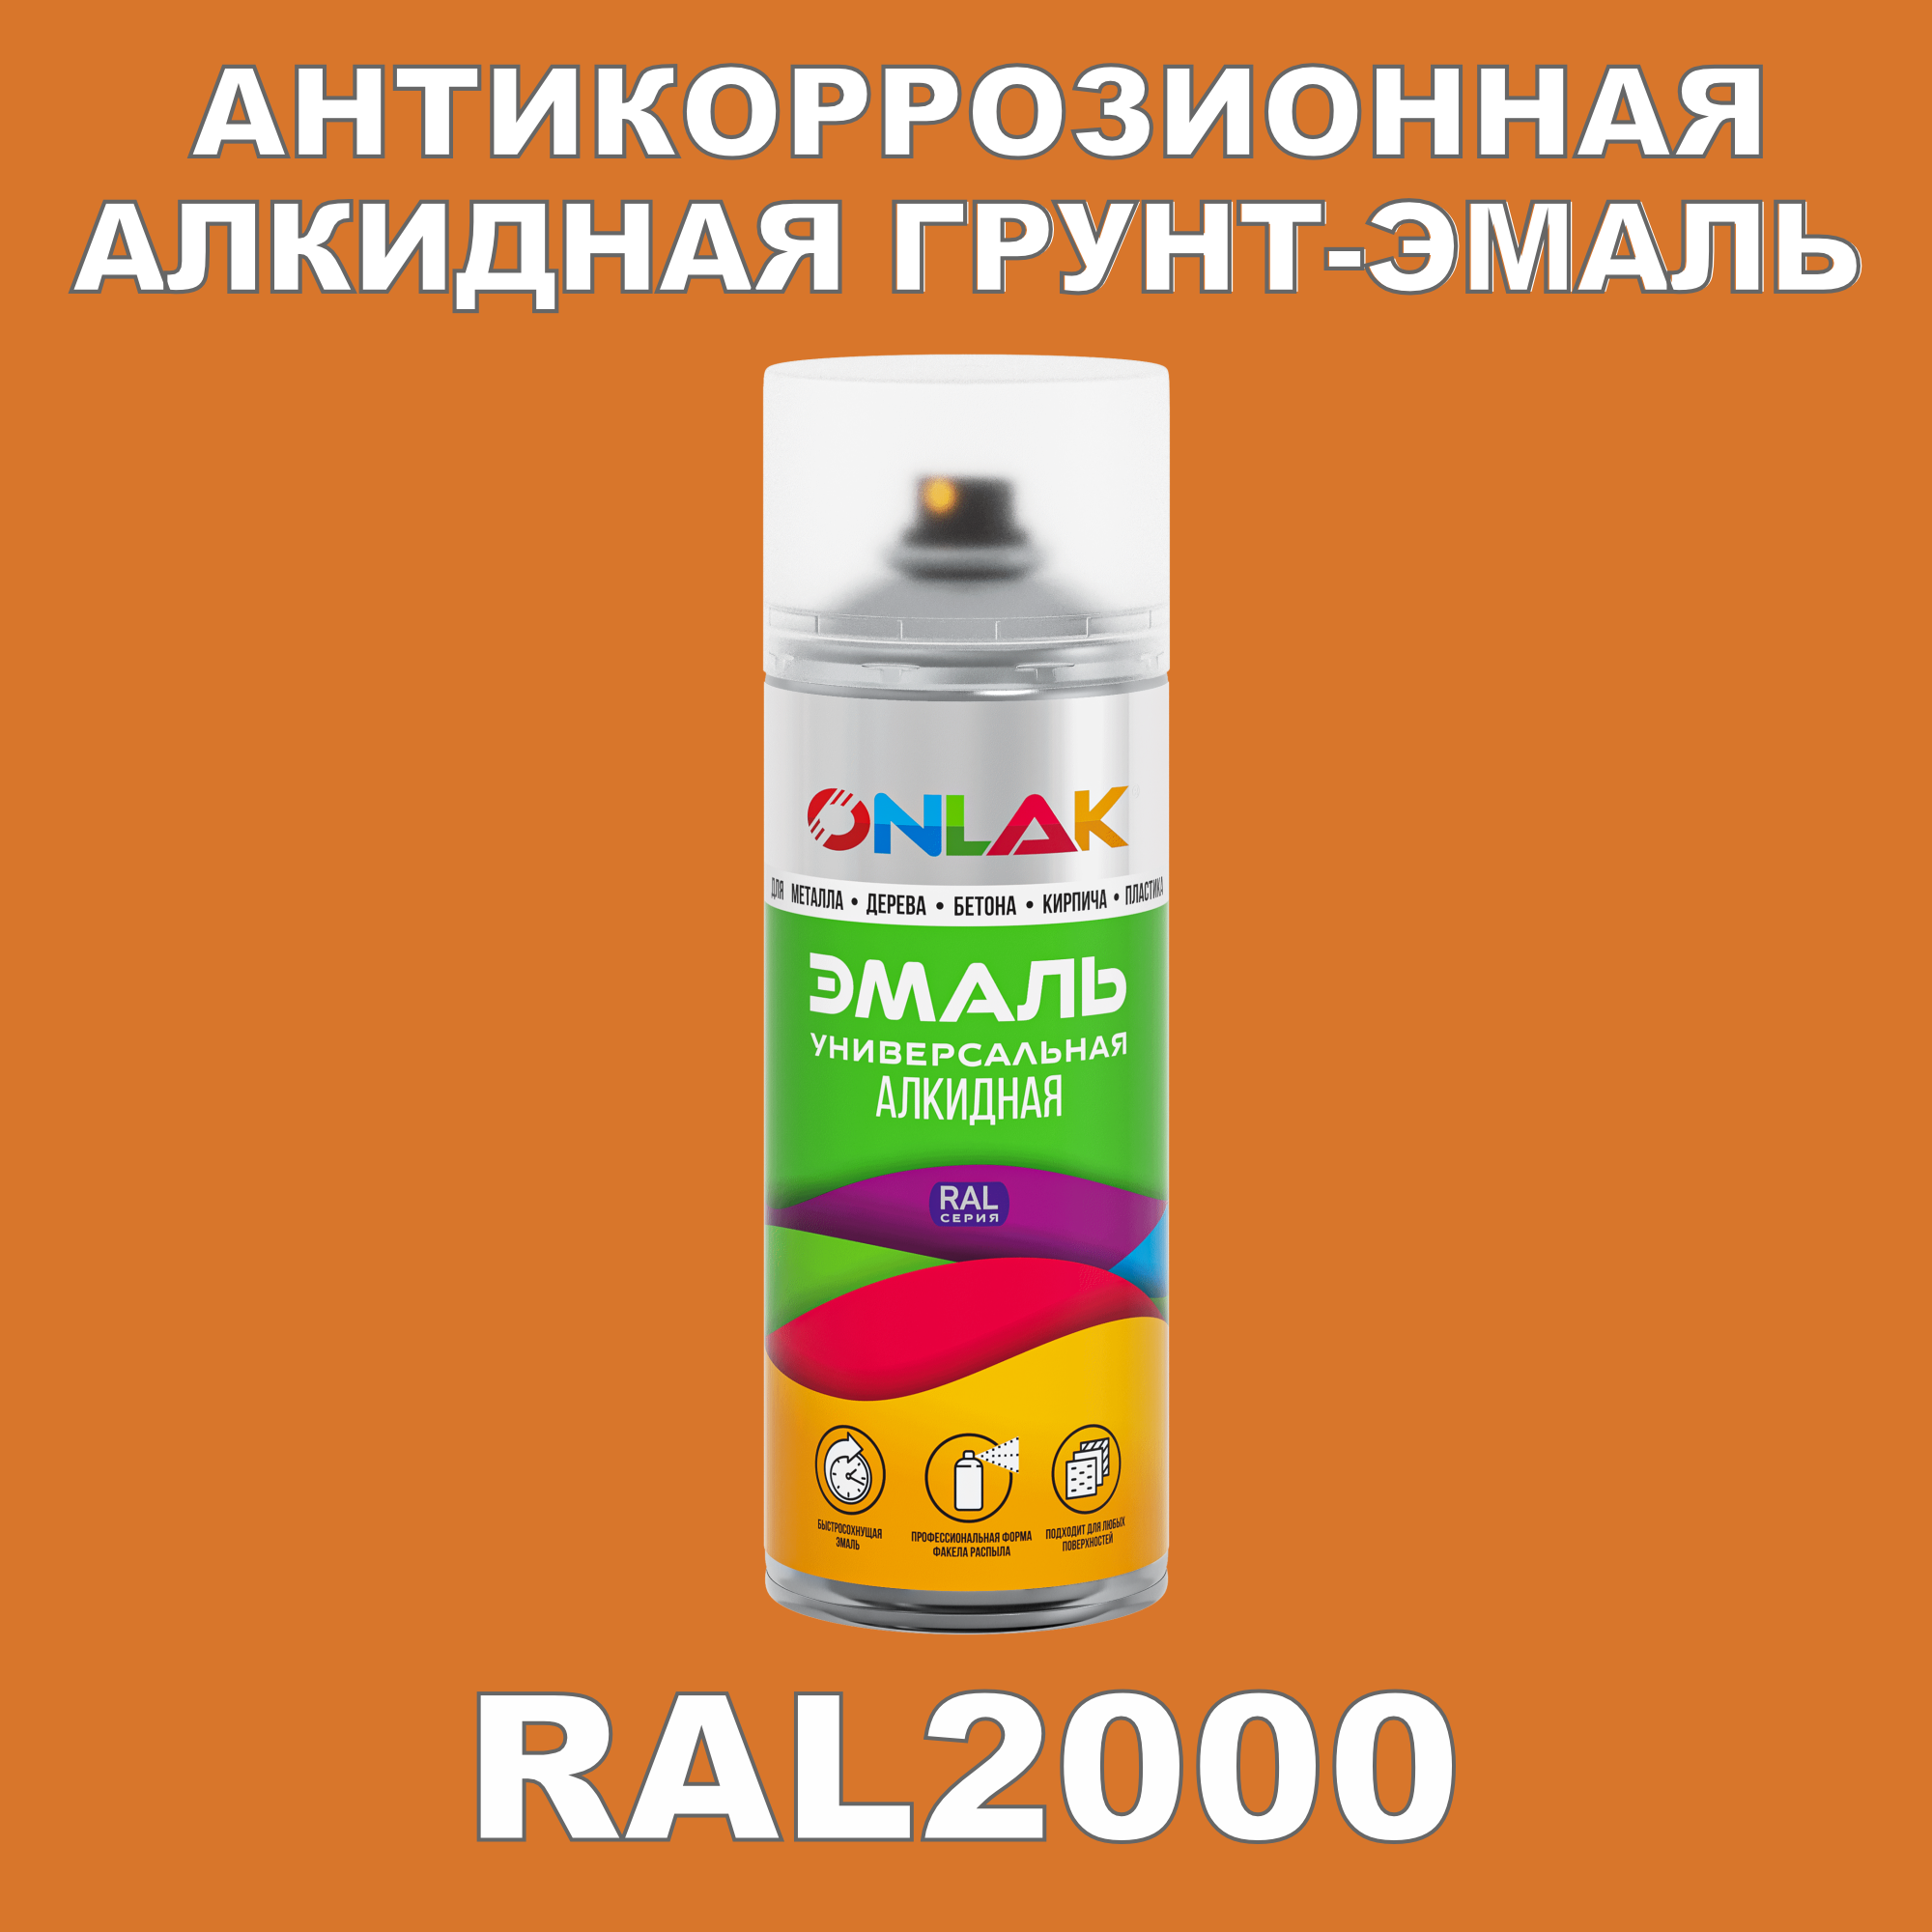 Антикоррозионная грунт-эмаль ONLAK RAL2000 полуматовая для металла и защиты от ржавчины